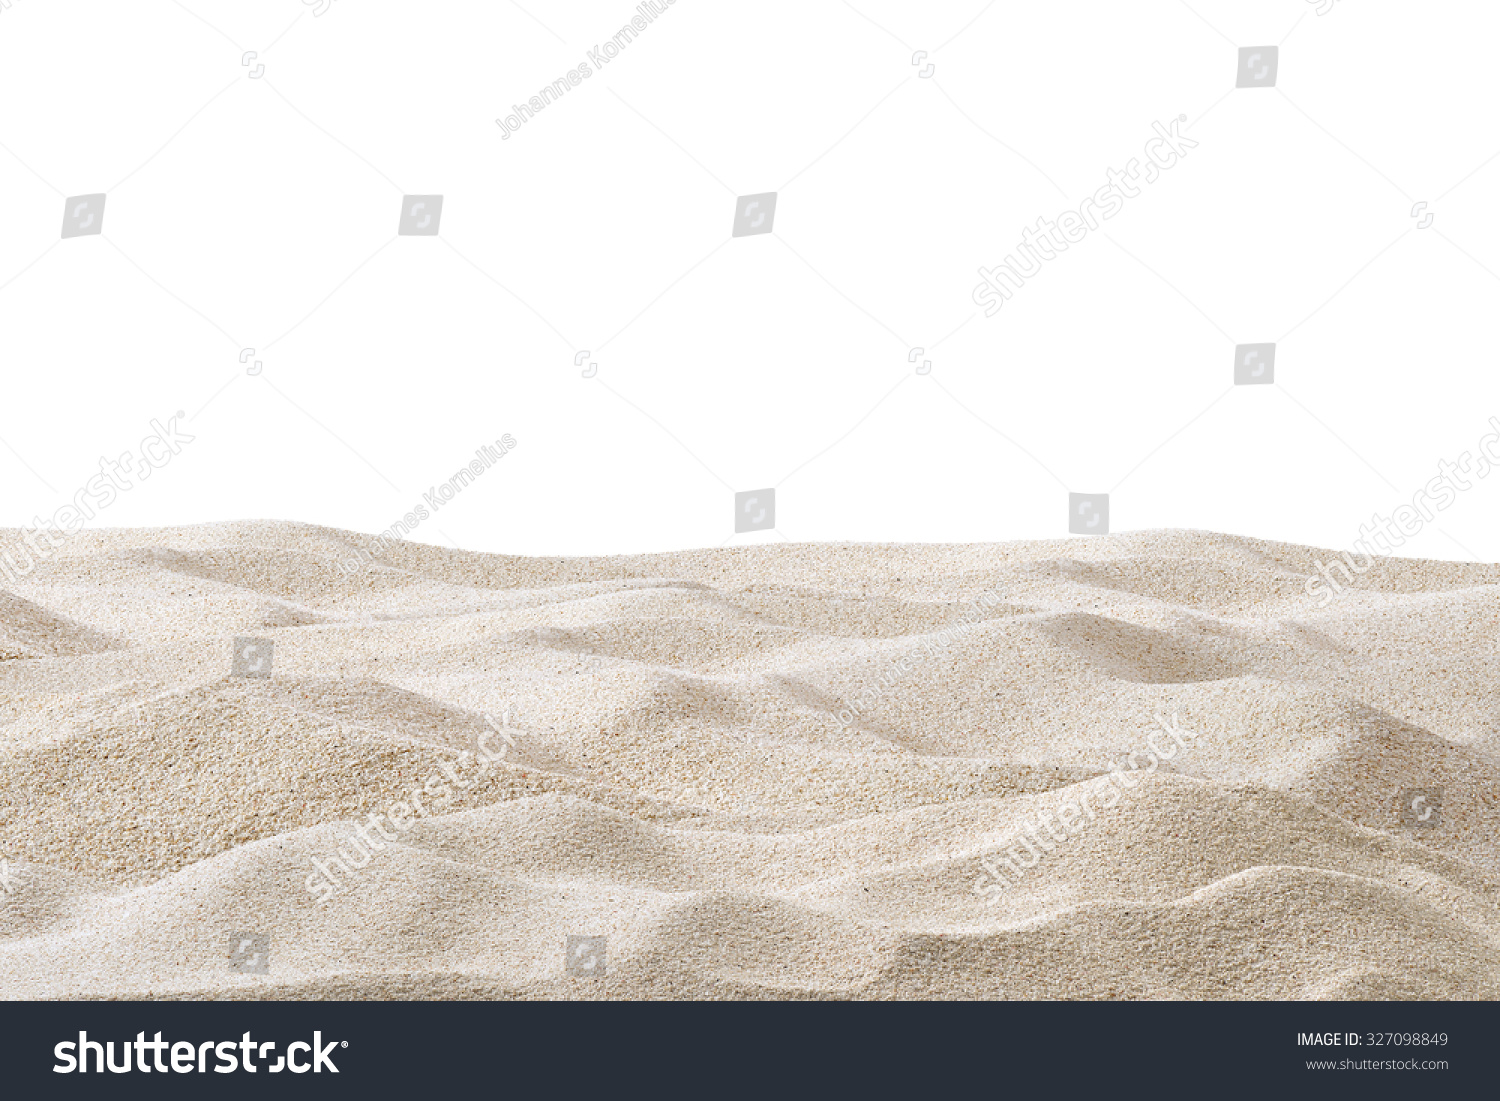 Sand dunes isolated on white background #327098849